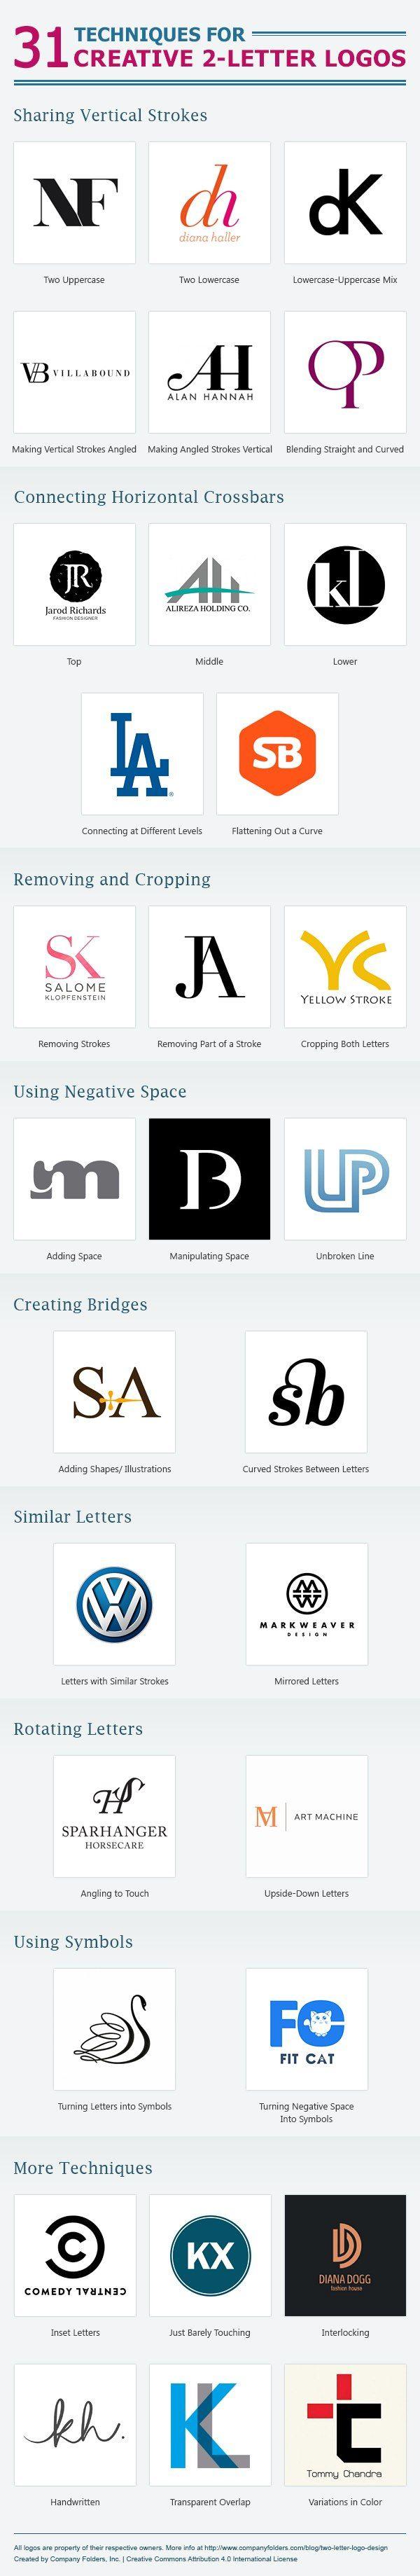 2- Letter Company Logo - The Art of the Two-Letter Logo | Logo Designs | Logo design, Logos ...